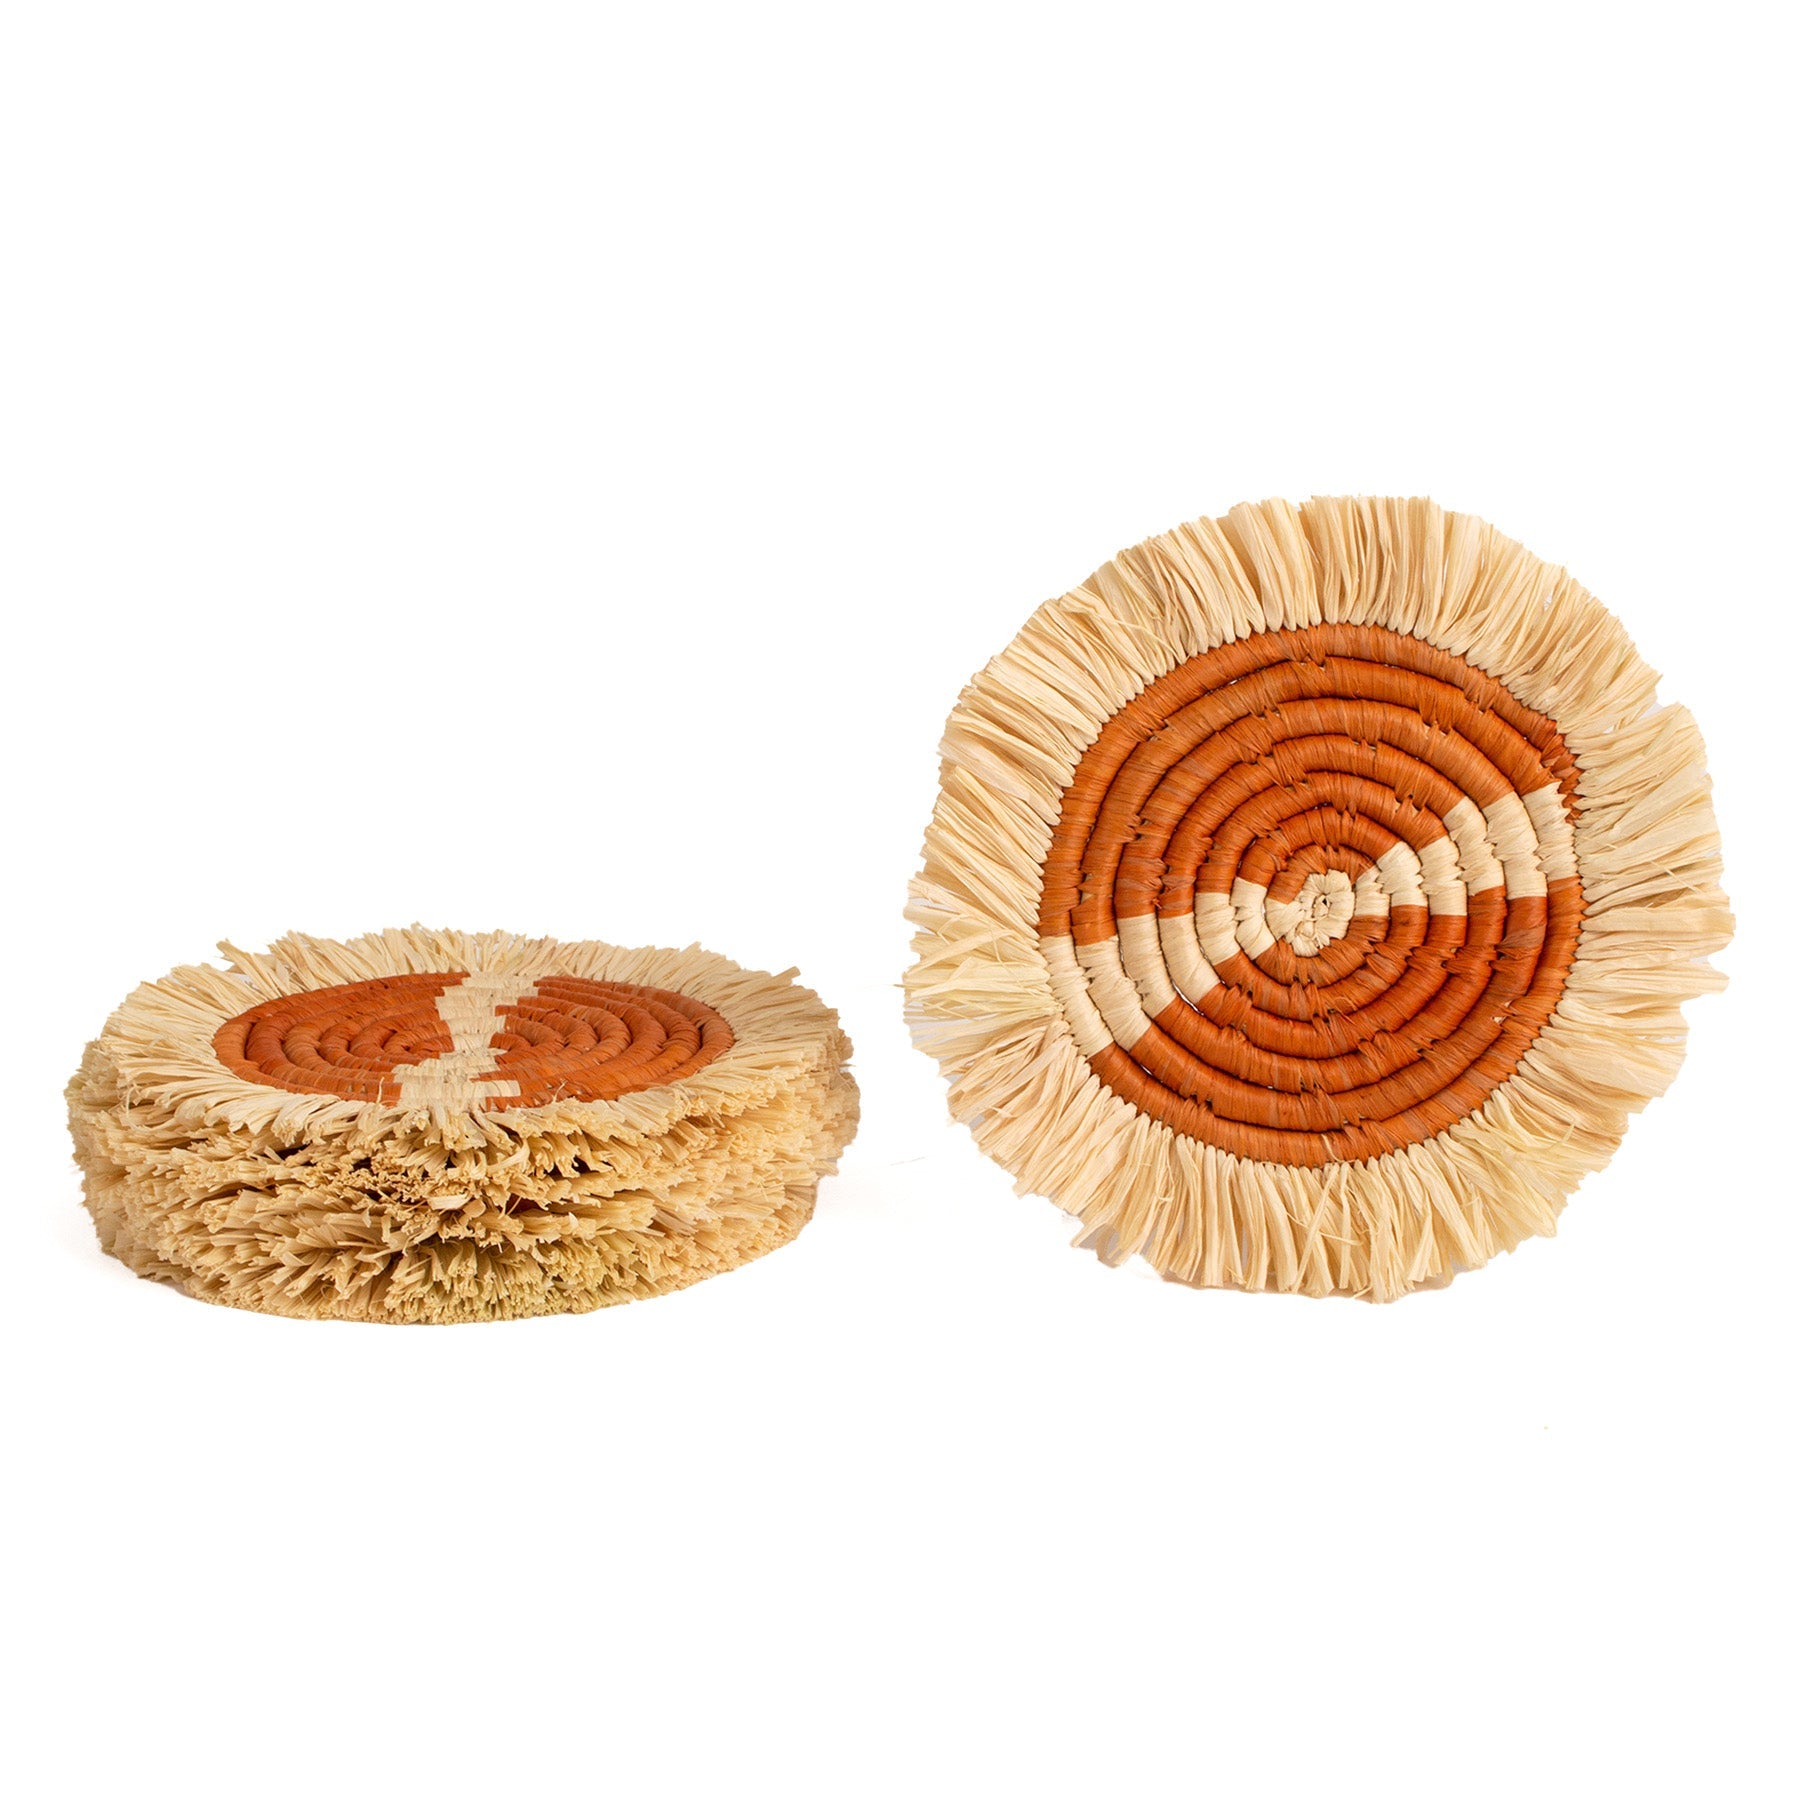  Earthen Craft Fringed Coasters - Earth Orange, Set of 4 by Kazi Goods - Wholesale Kazi Goods - Wholesale Perfumarie